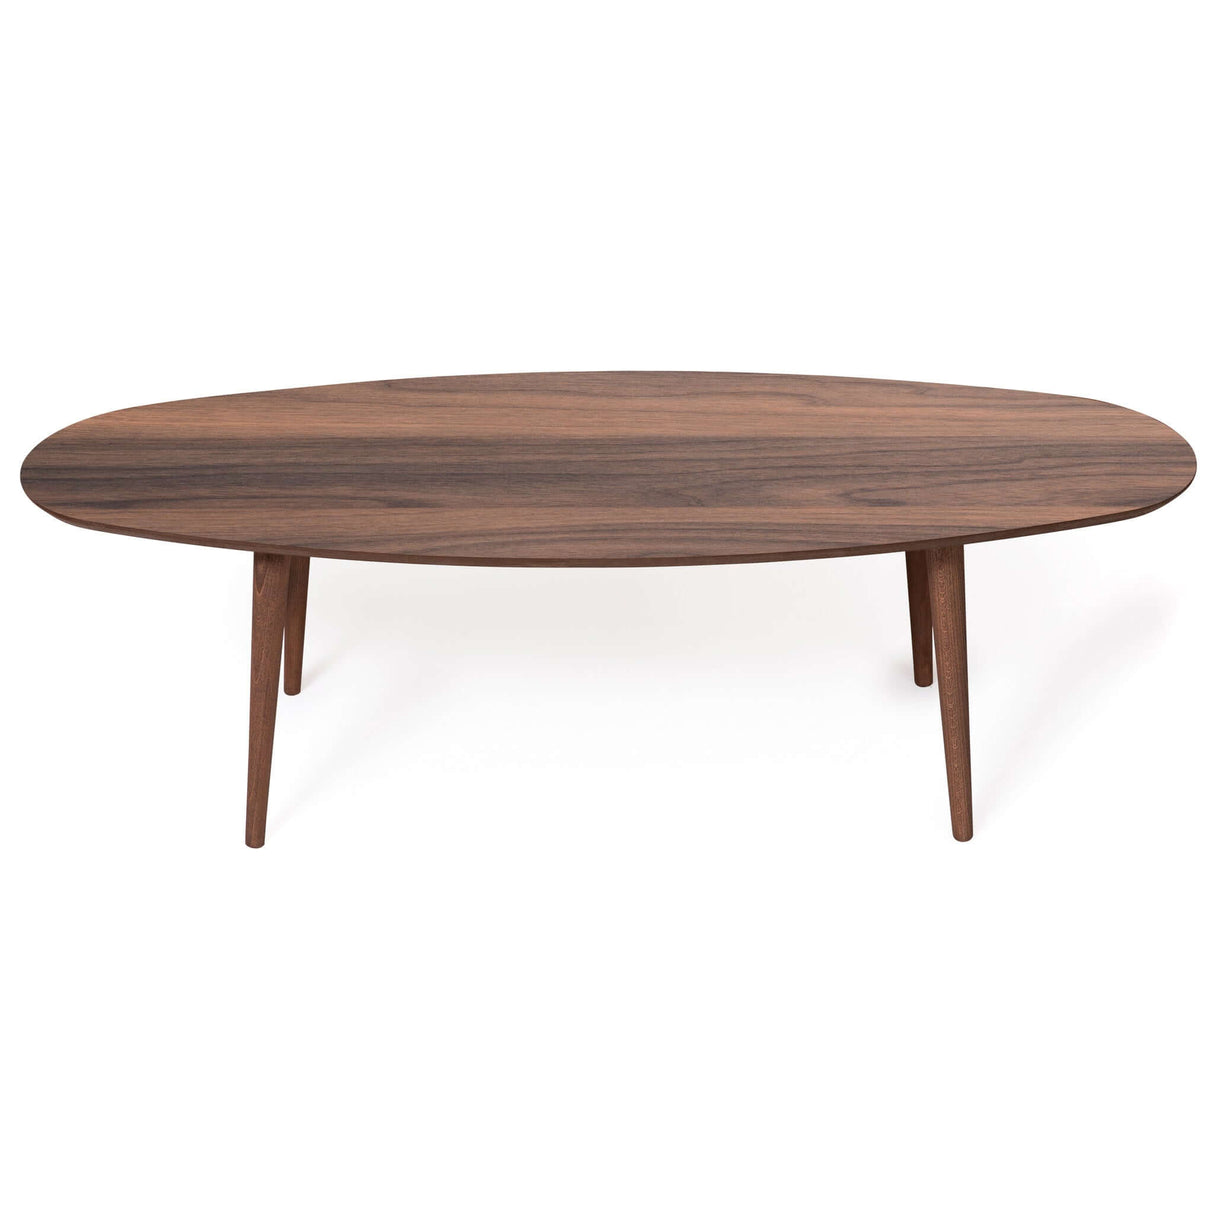 Carsen Mid-Century Modern Oval Center Table Walnut